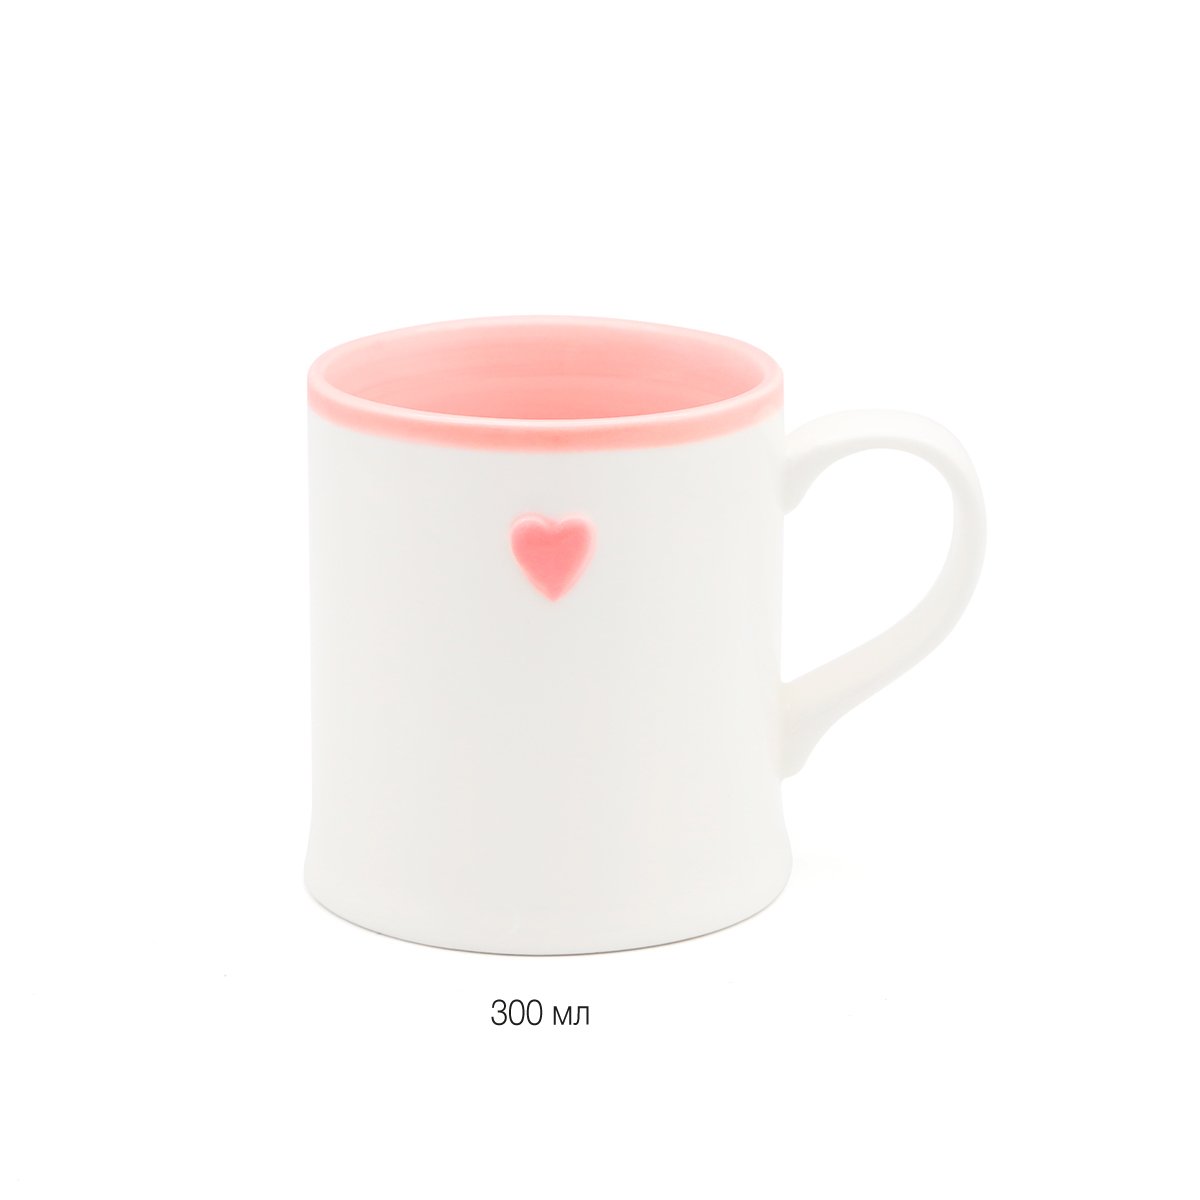 Чашка МВМ My Home, 300 мл, розовая (KP-47 PINK) - фото 2